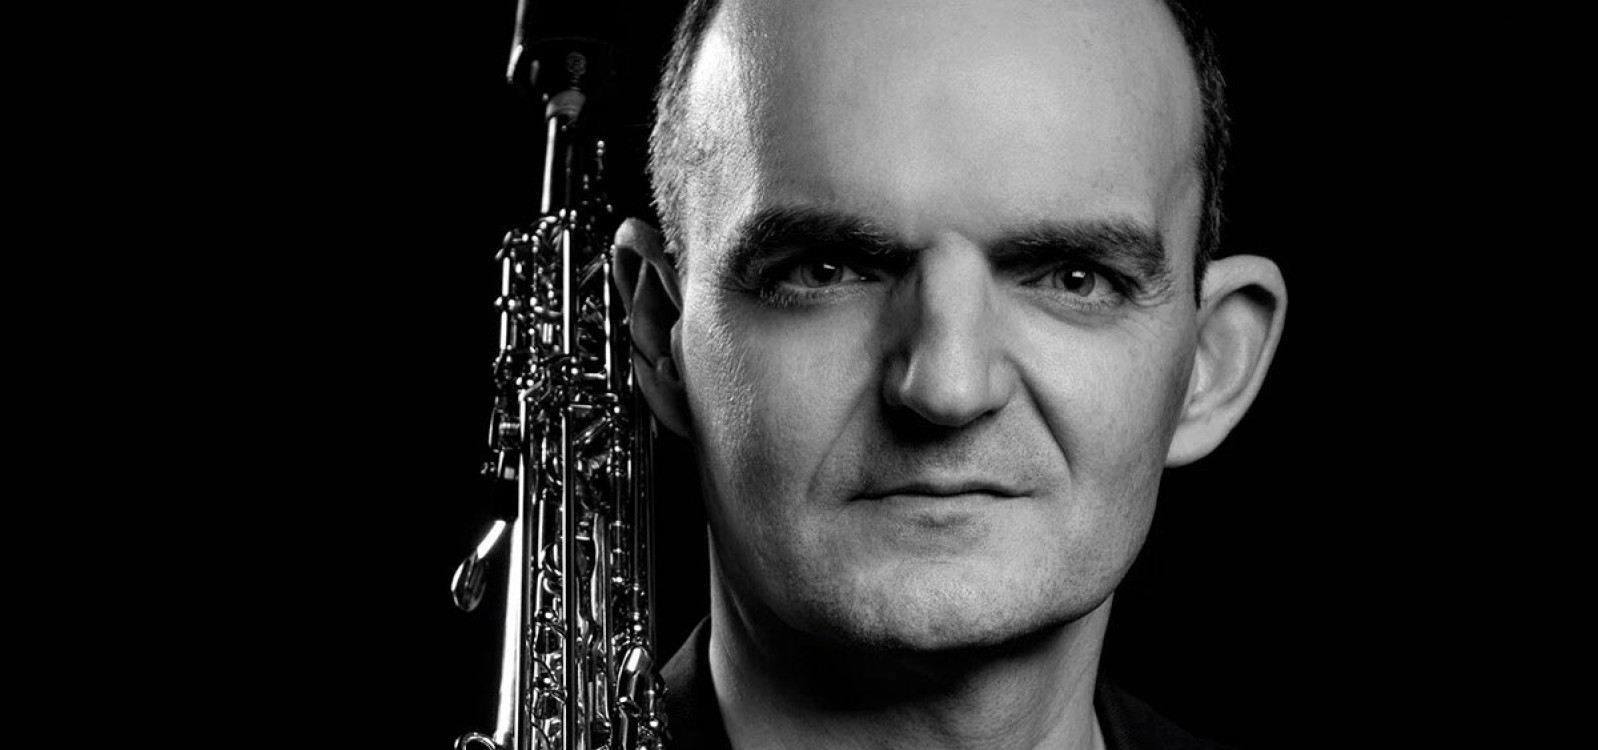 La Orquesta Filarmónica de Gran Canaria ofrece un programa de saxofón dirigido por David González